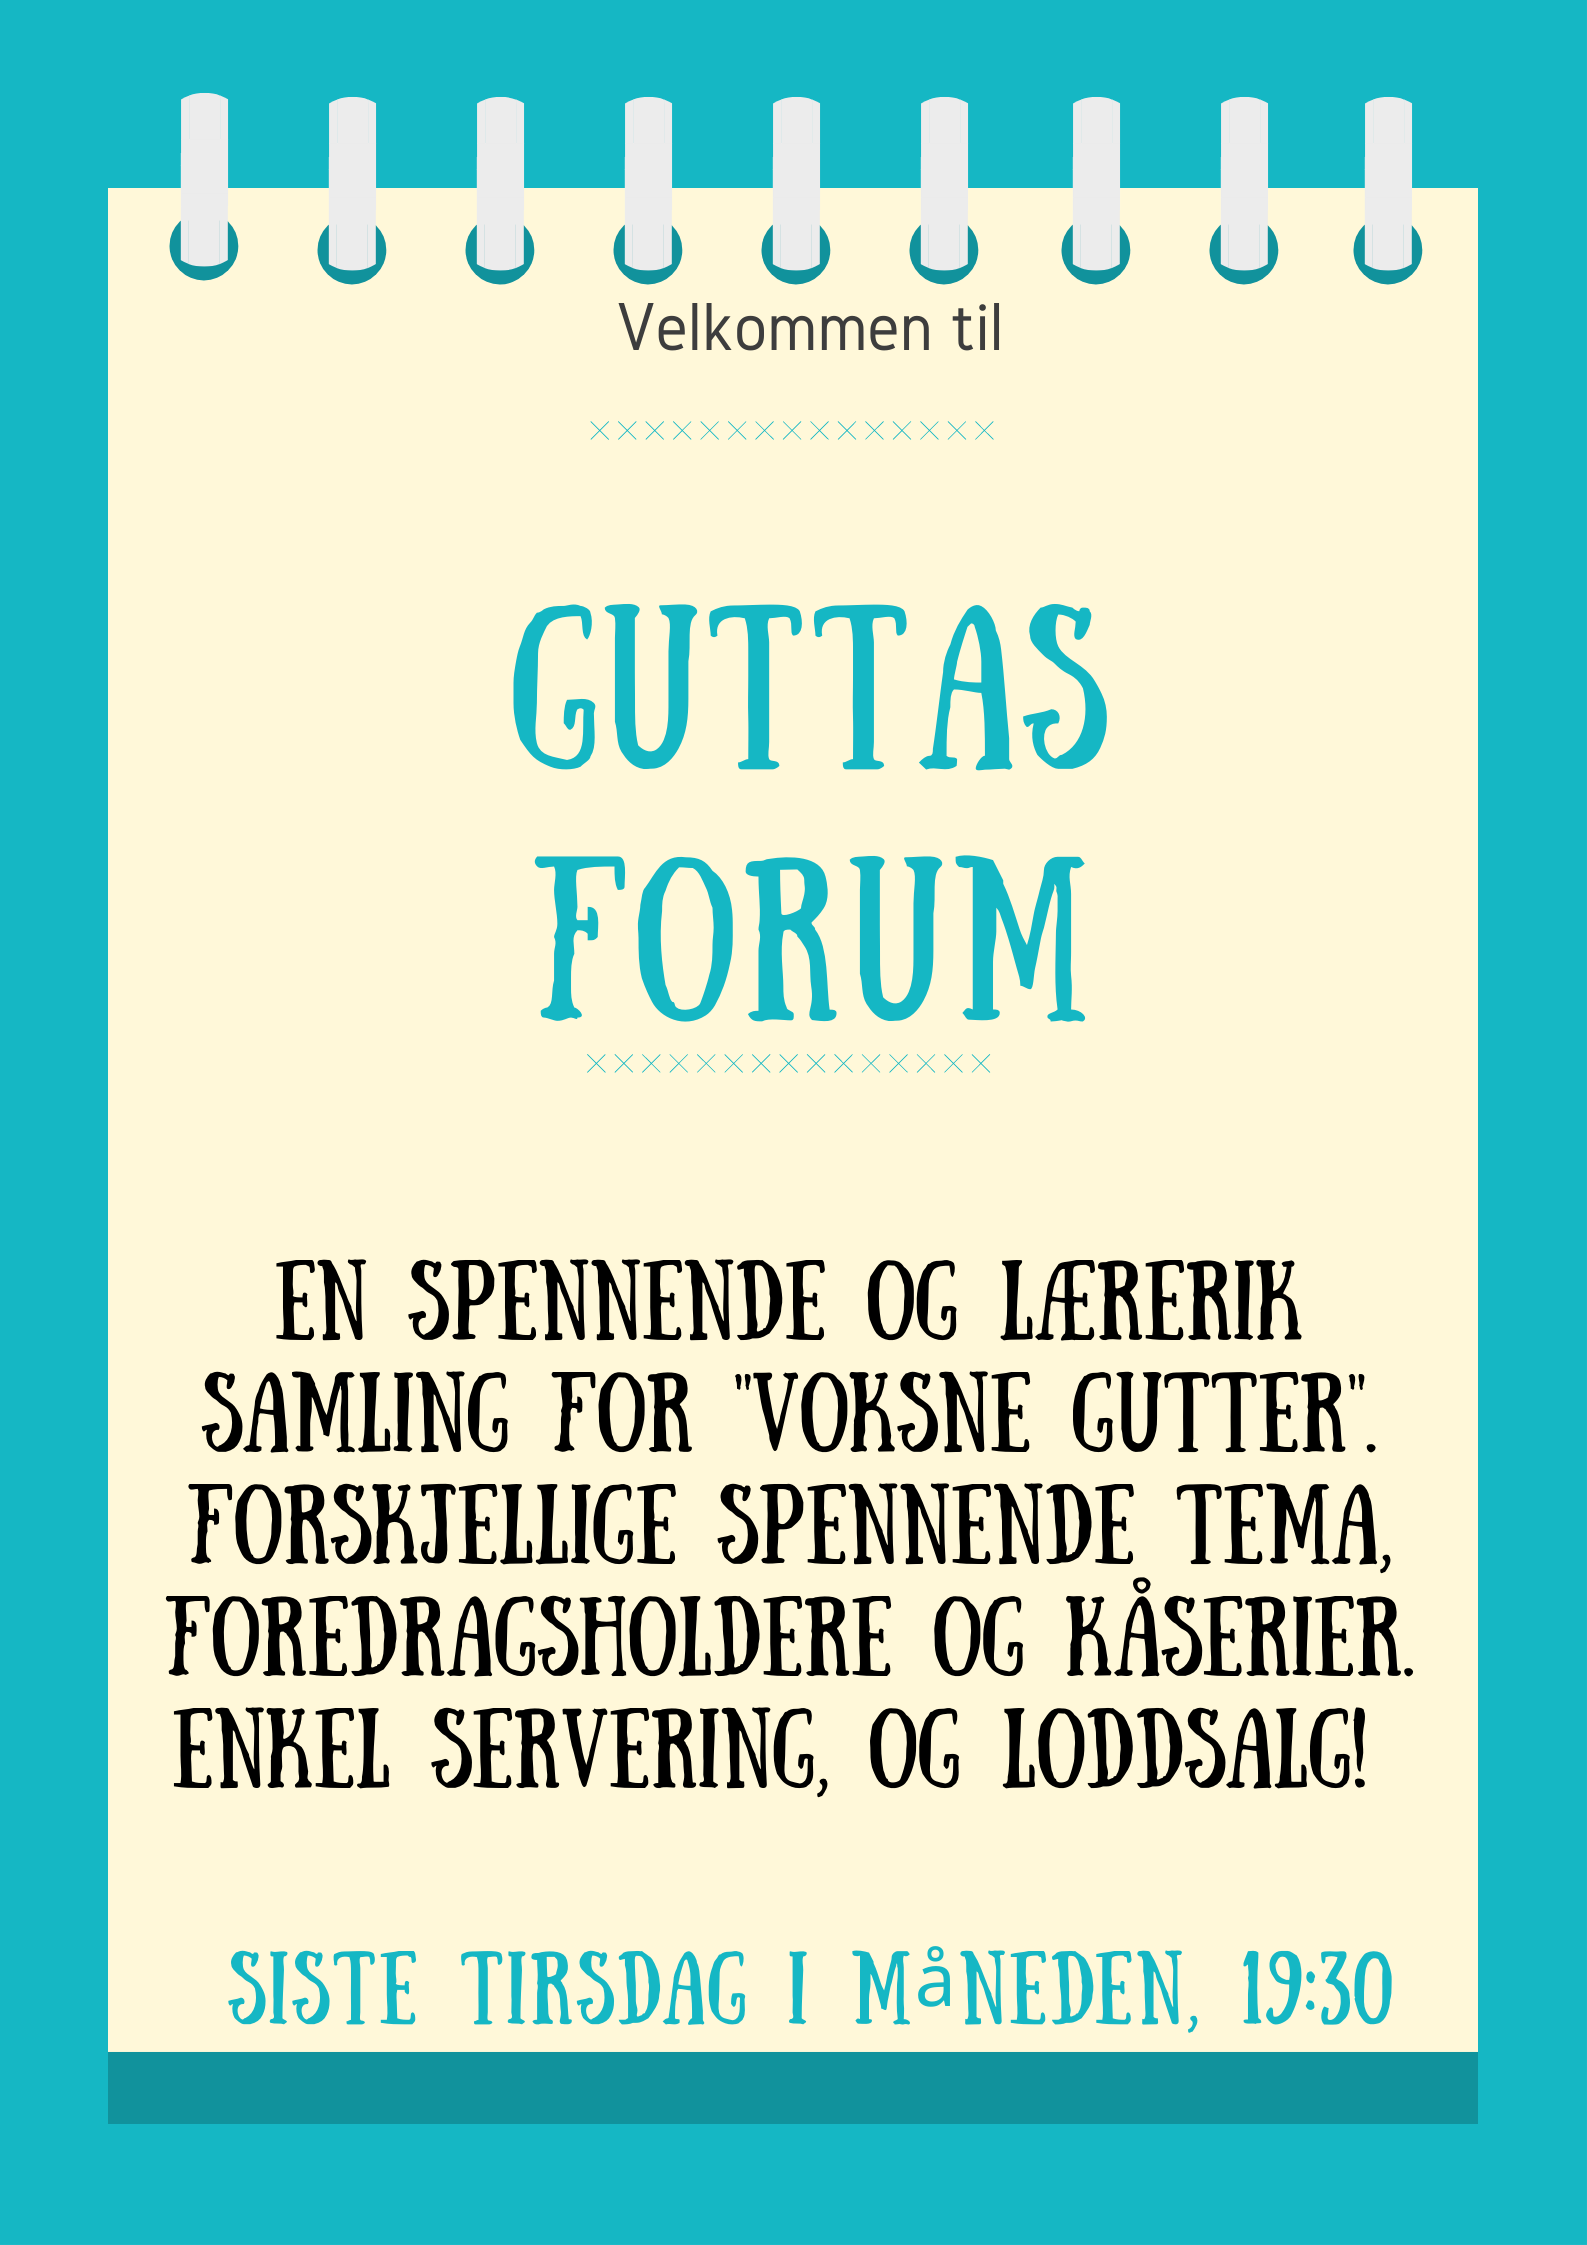 Guttas Forum